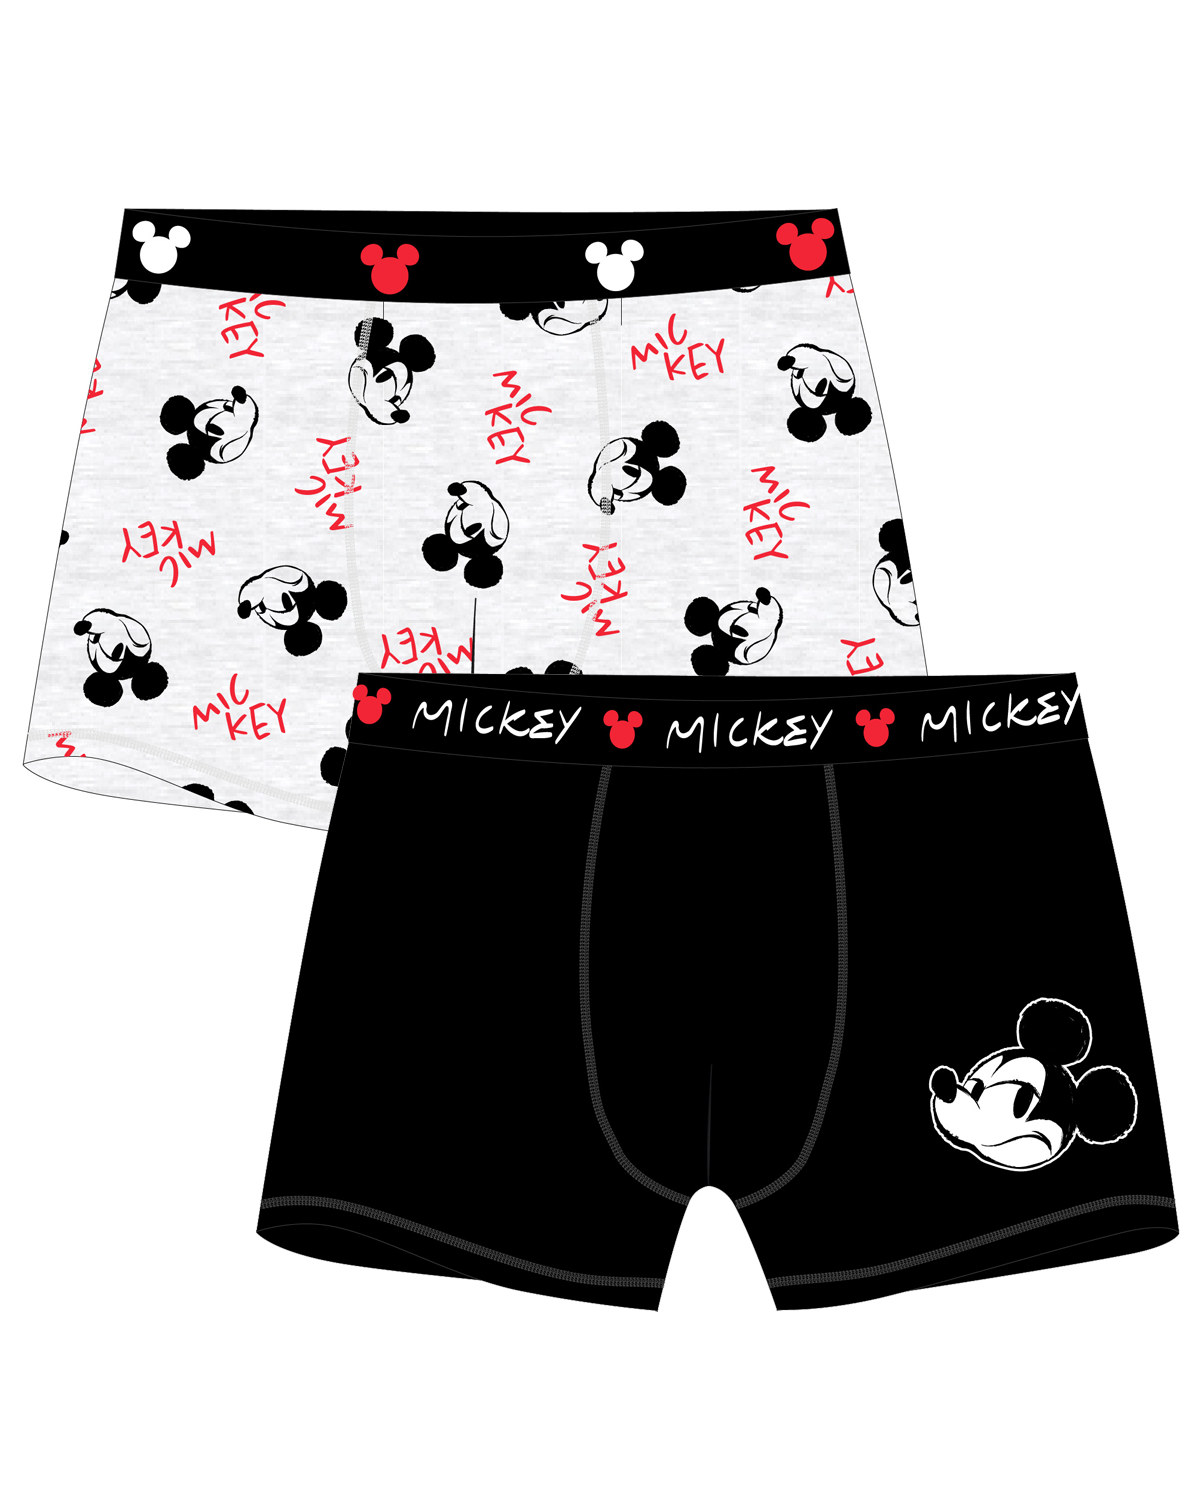 Mickey Mouse - licence Pánské boxerky - Mickey Mouse 5333C143, černá / šedý melír Barva: Mix barev, Velikost: M